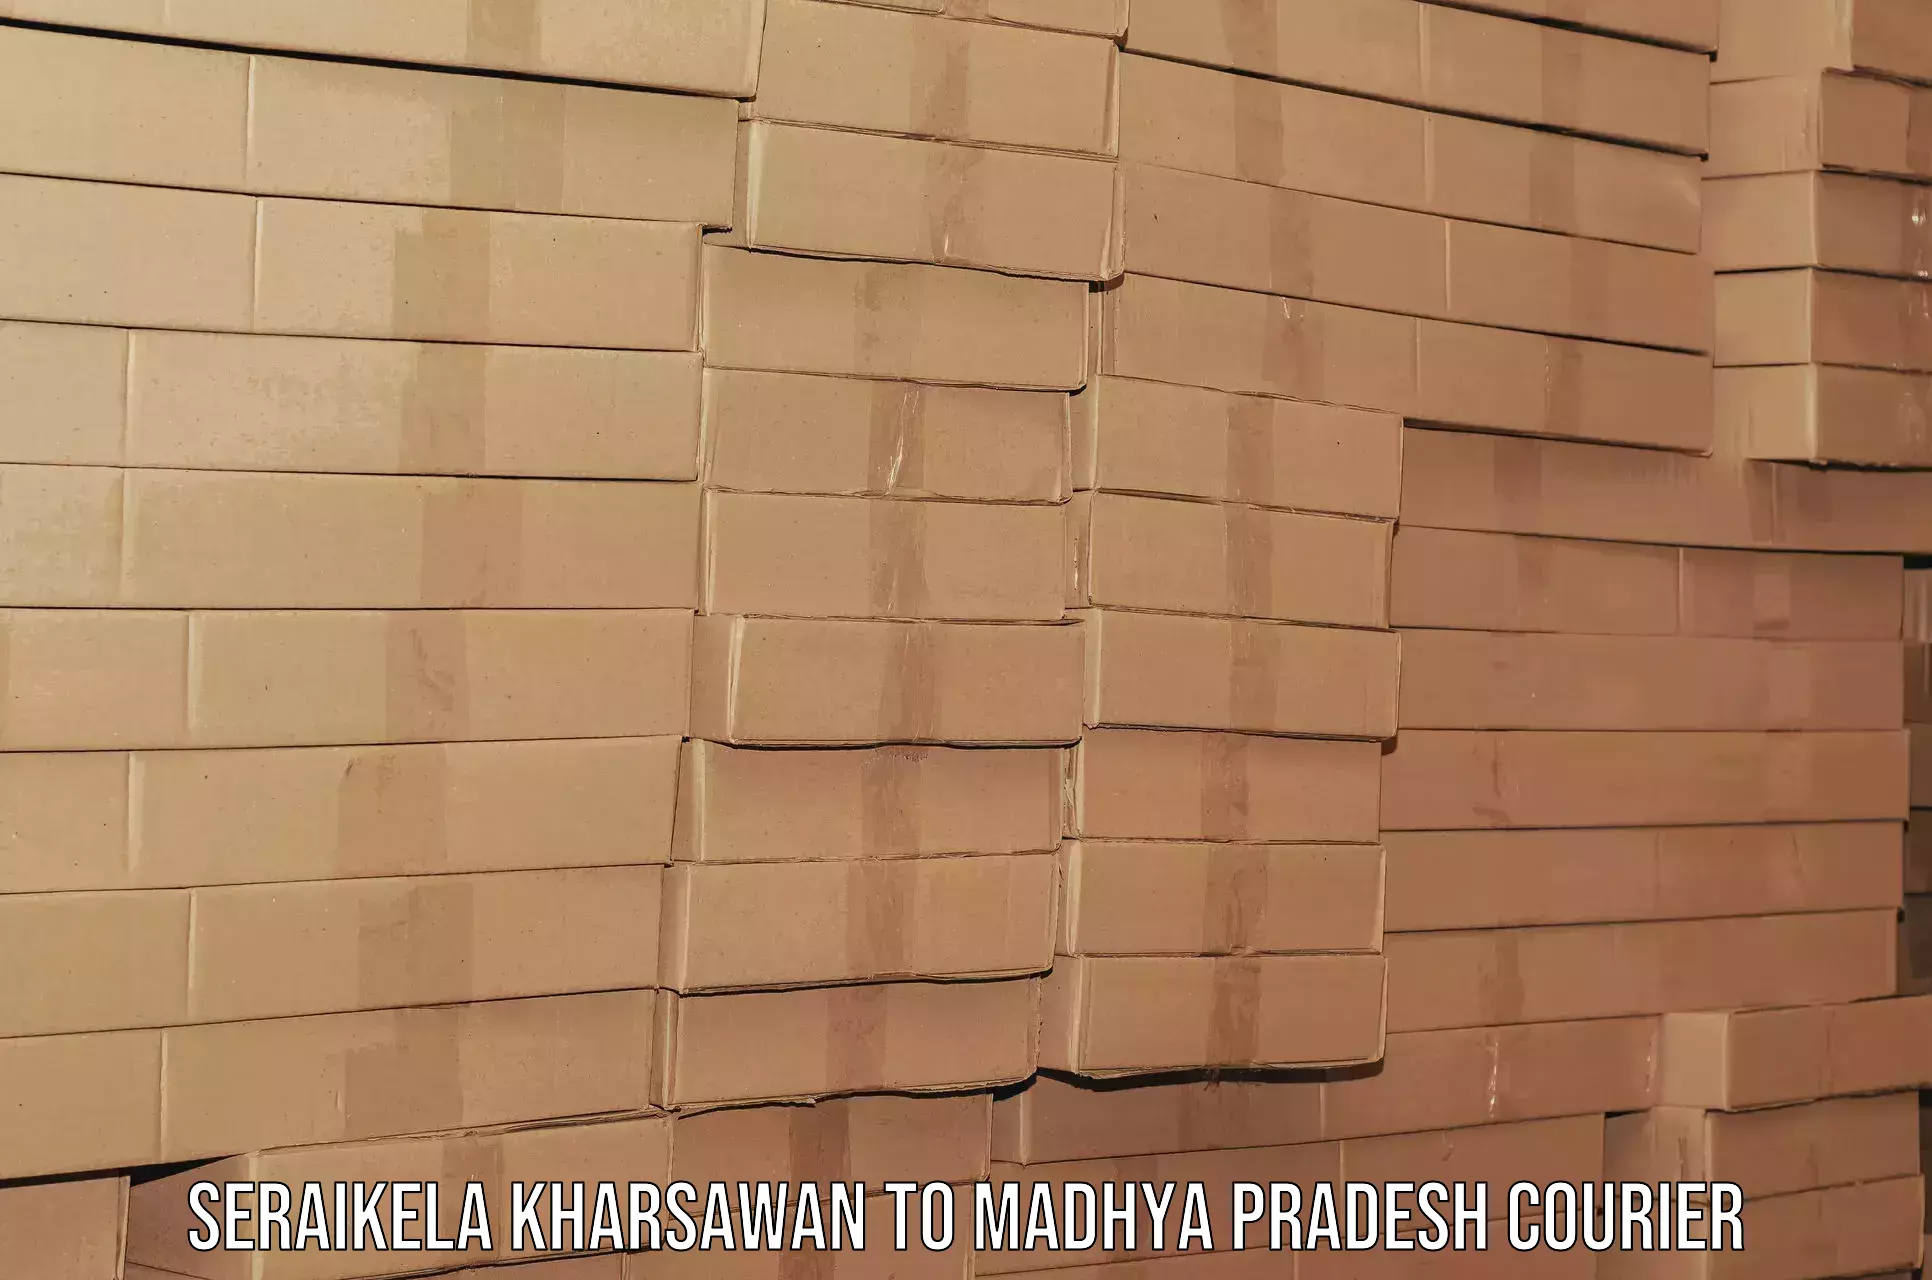 Furniture transport experts Seraikela Kharsawan to Madhya Pradesh